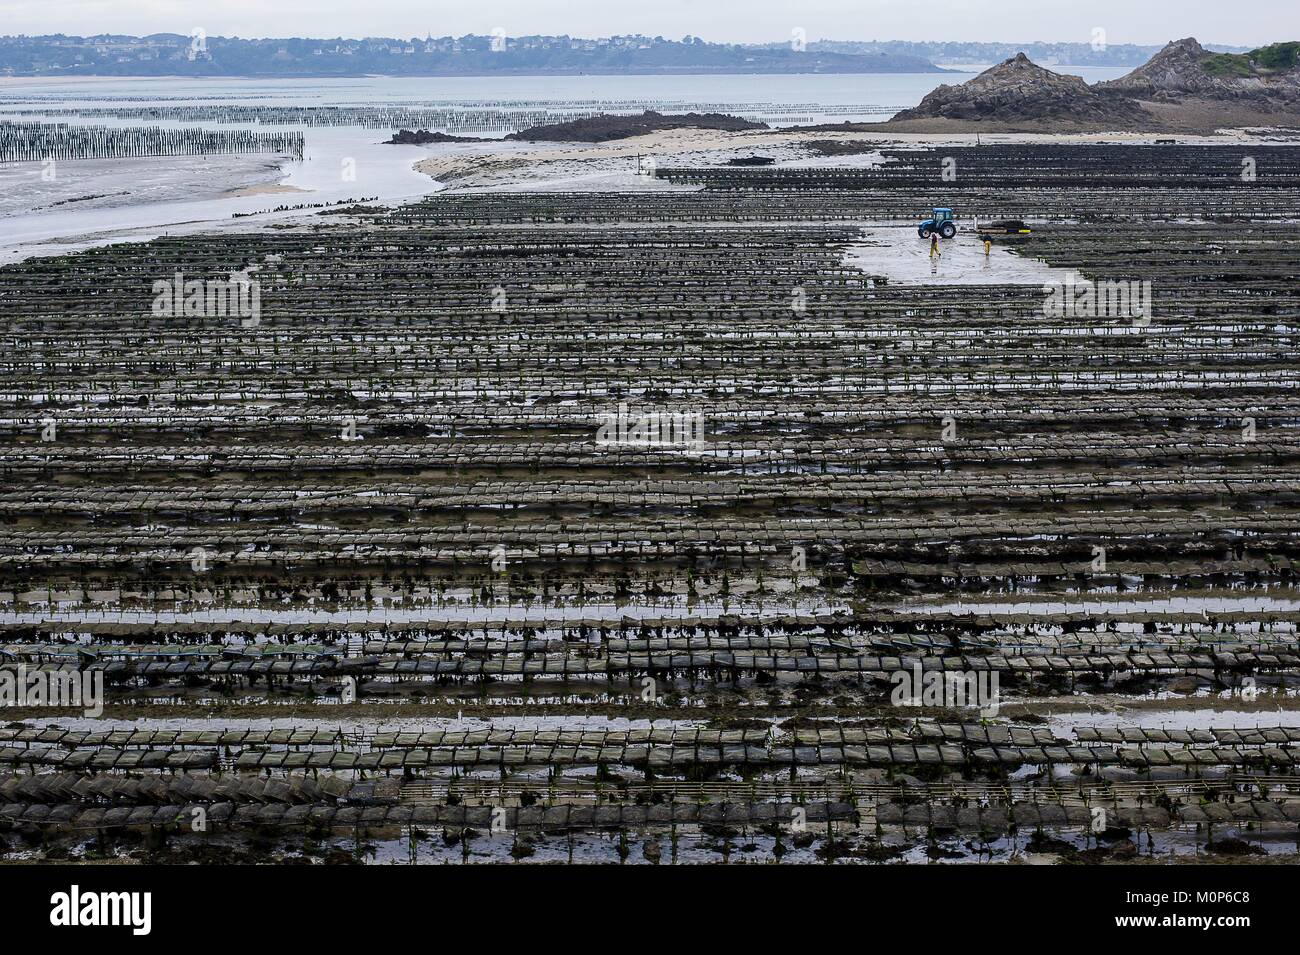 France,Cotes d'Armor,Saint Jacut de la Mer,general view of oyster farms at low tide Stock Photo